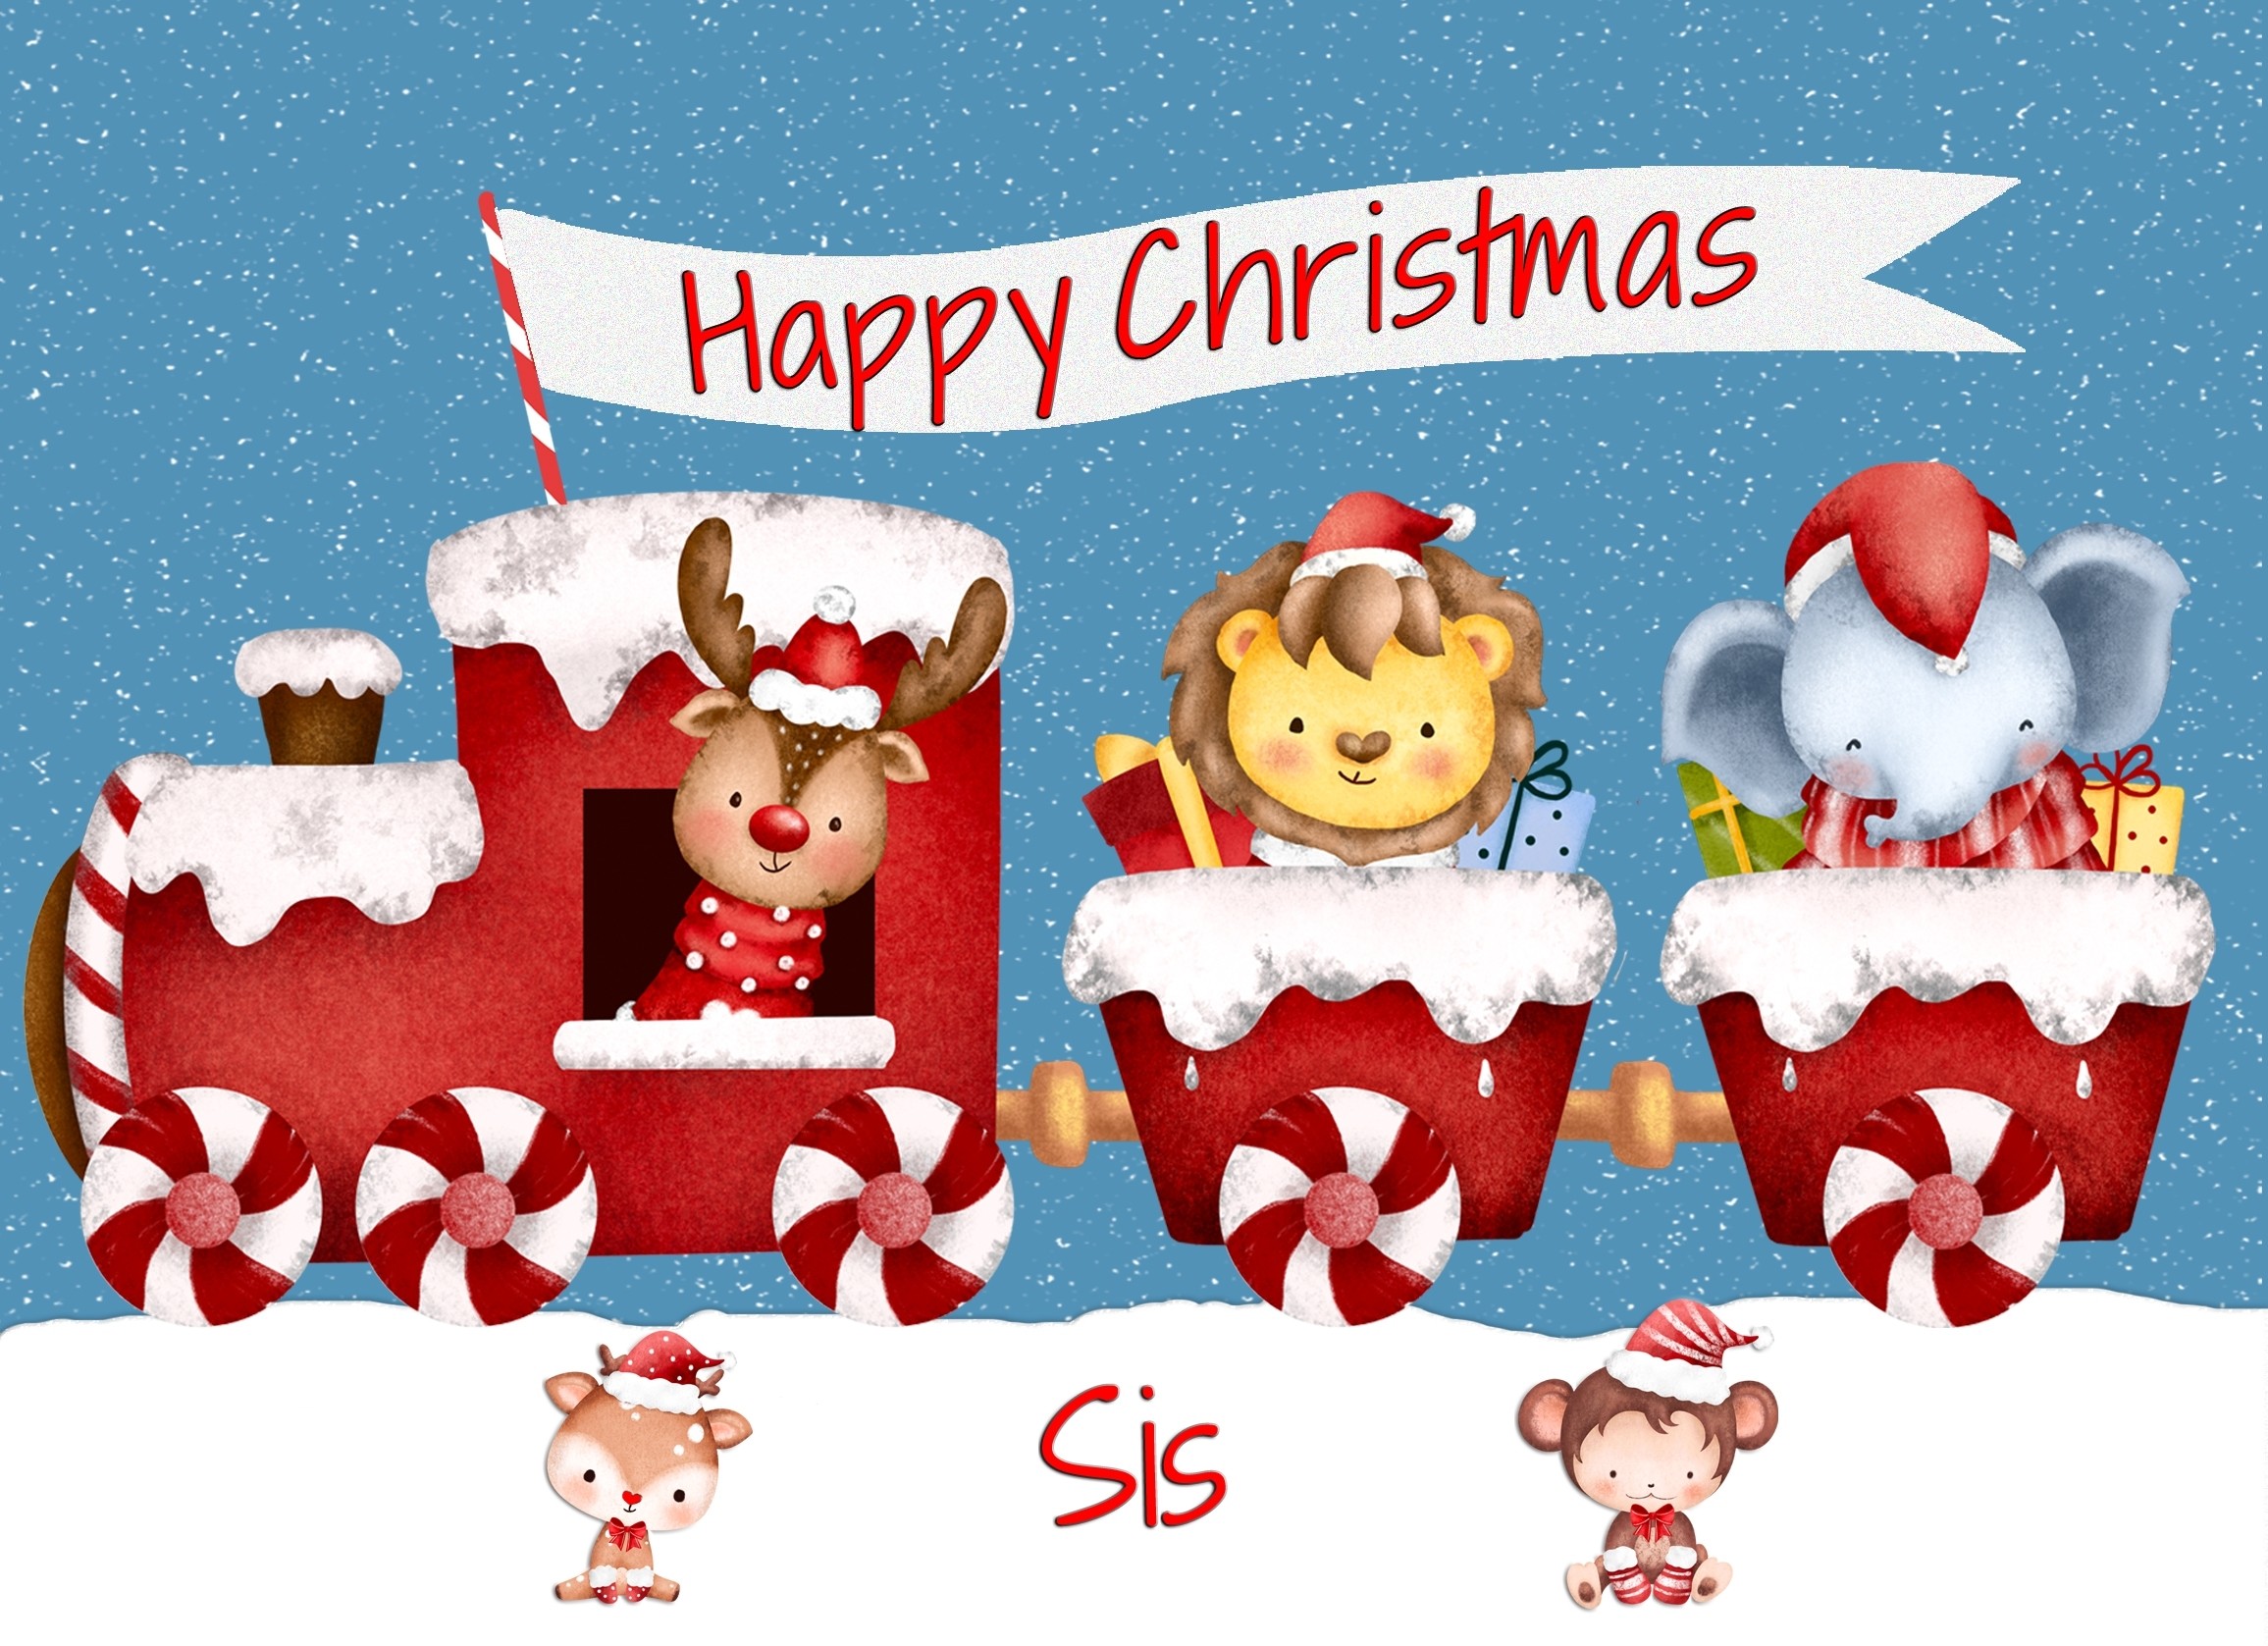 Christmas Card For Sis (Happy Christmas, Train)